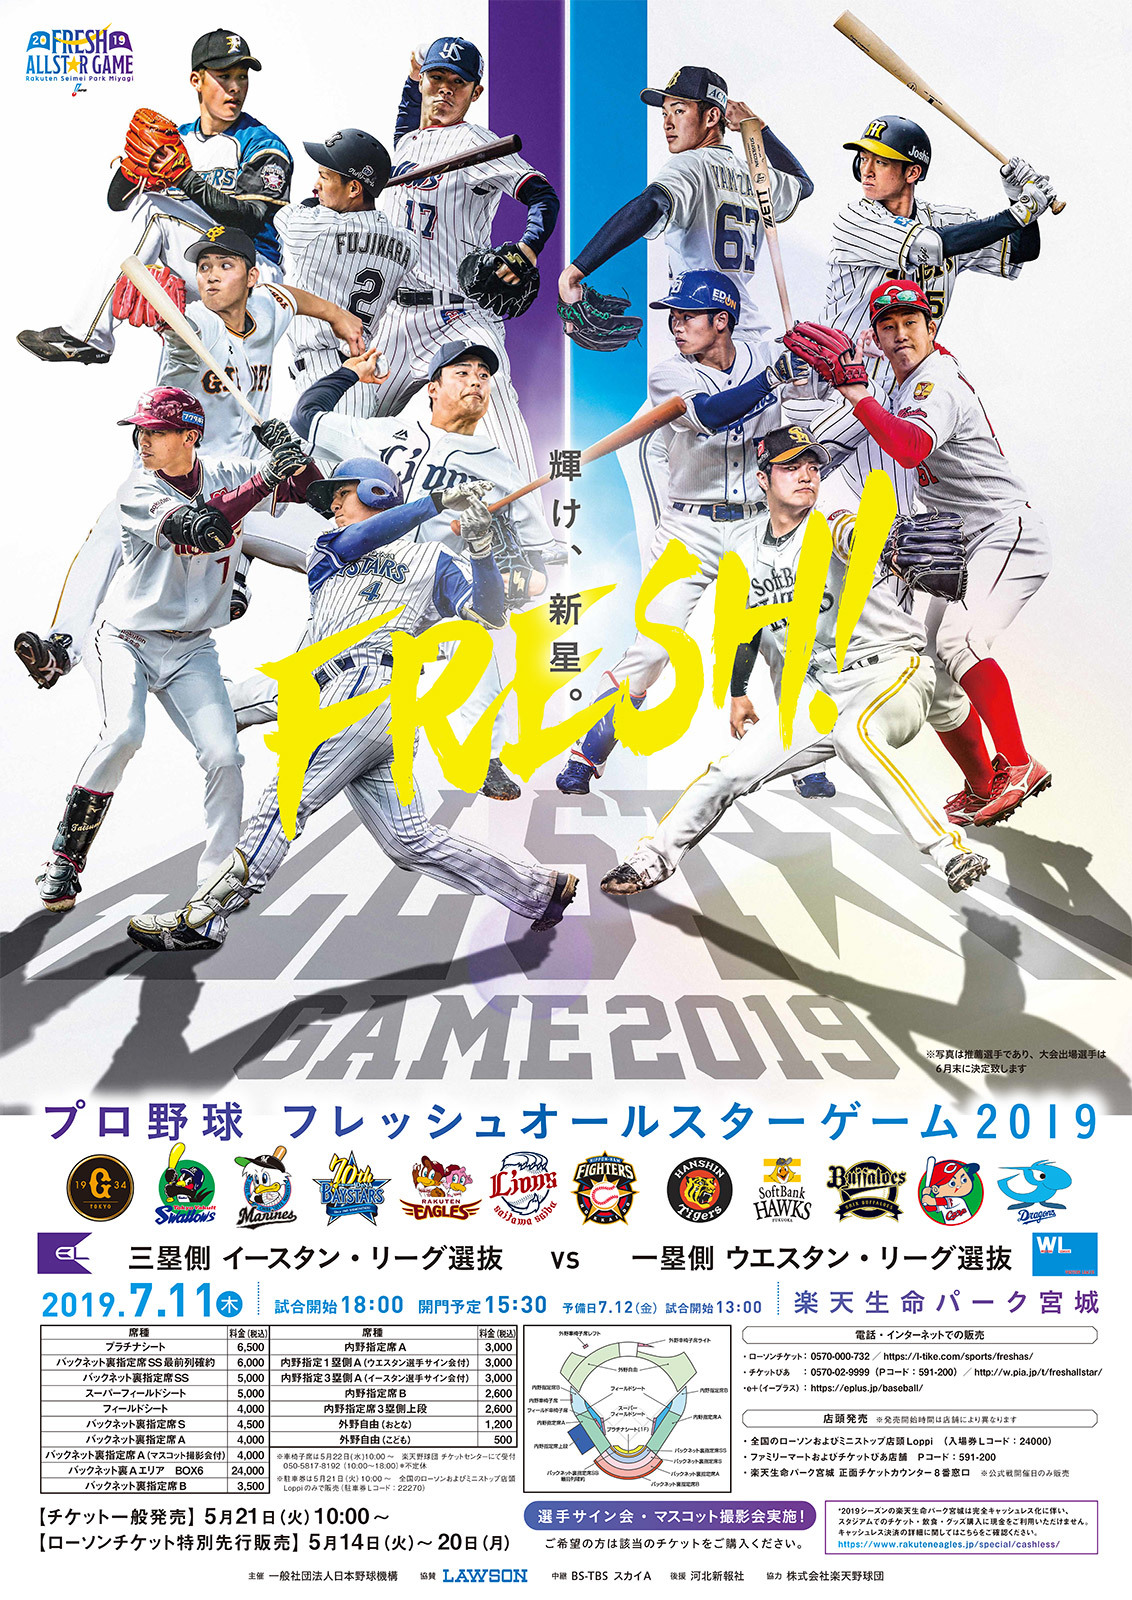 『プロ野球フレッシュオールスターゲーム2019』は7月11日開催